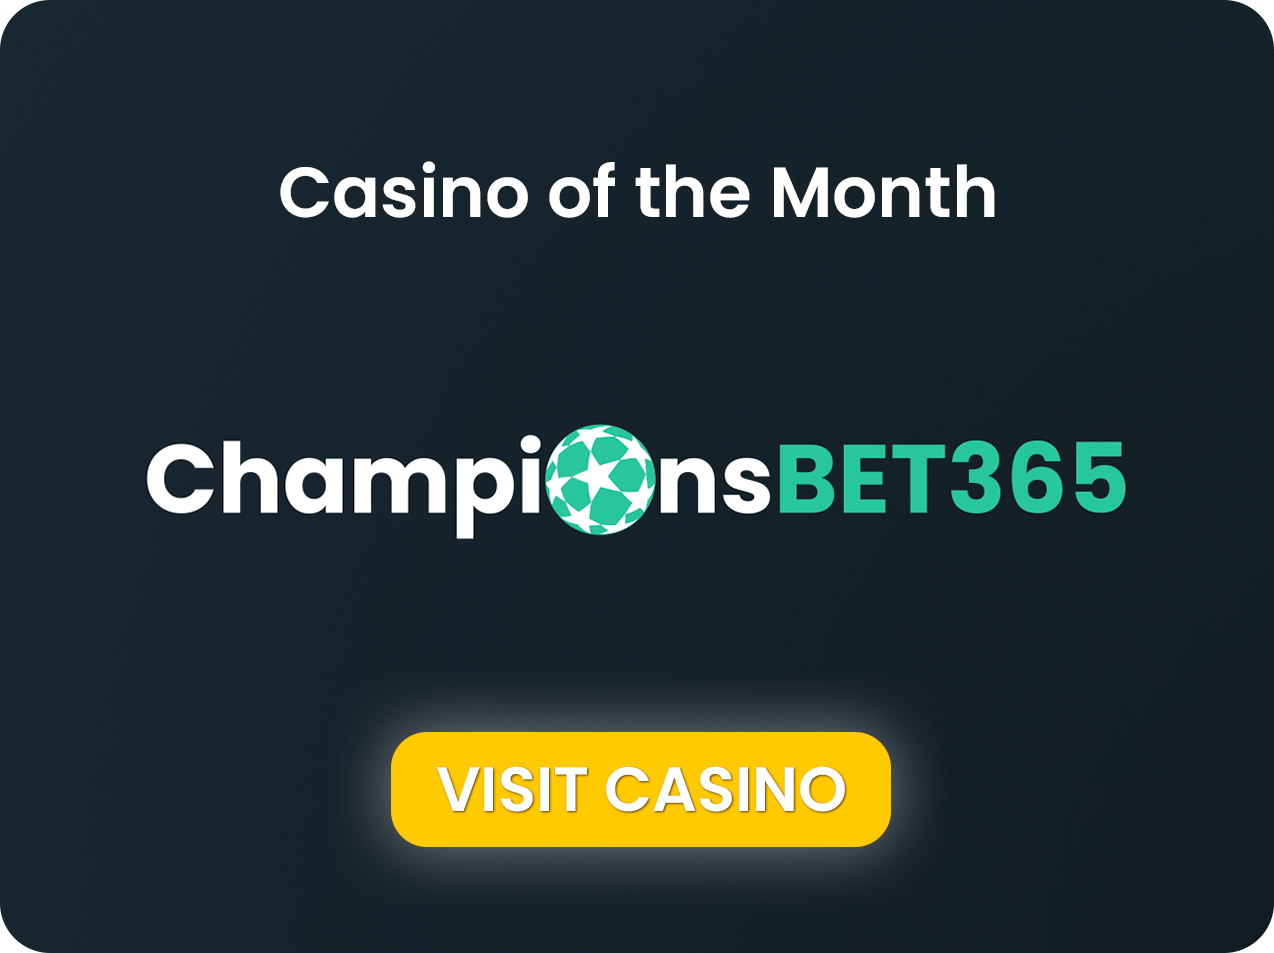 Championsbet365 Casino del mes